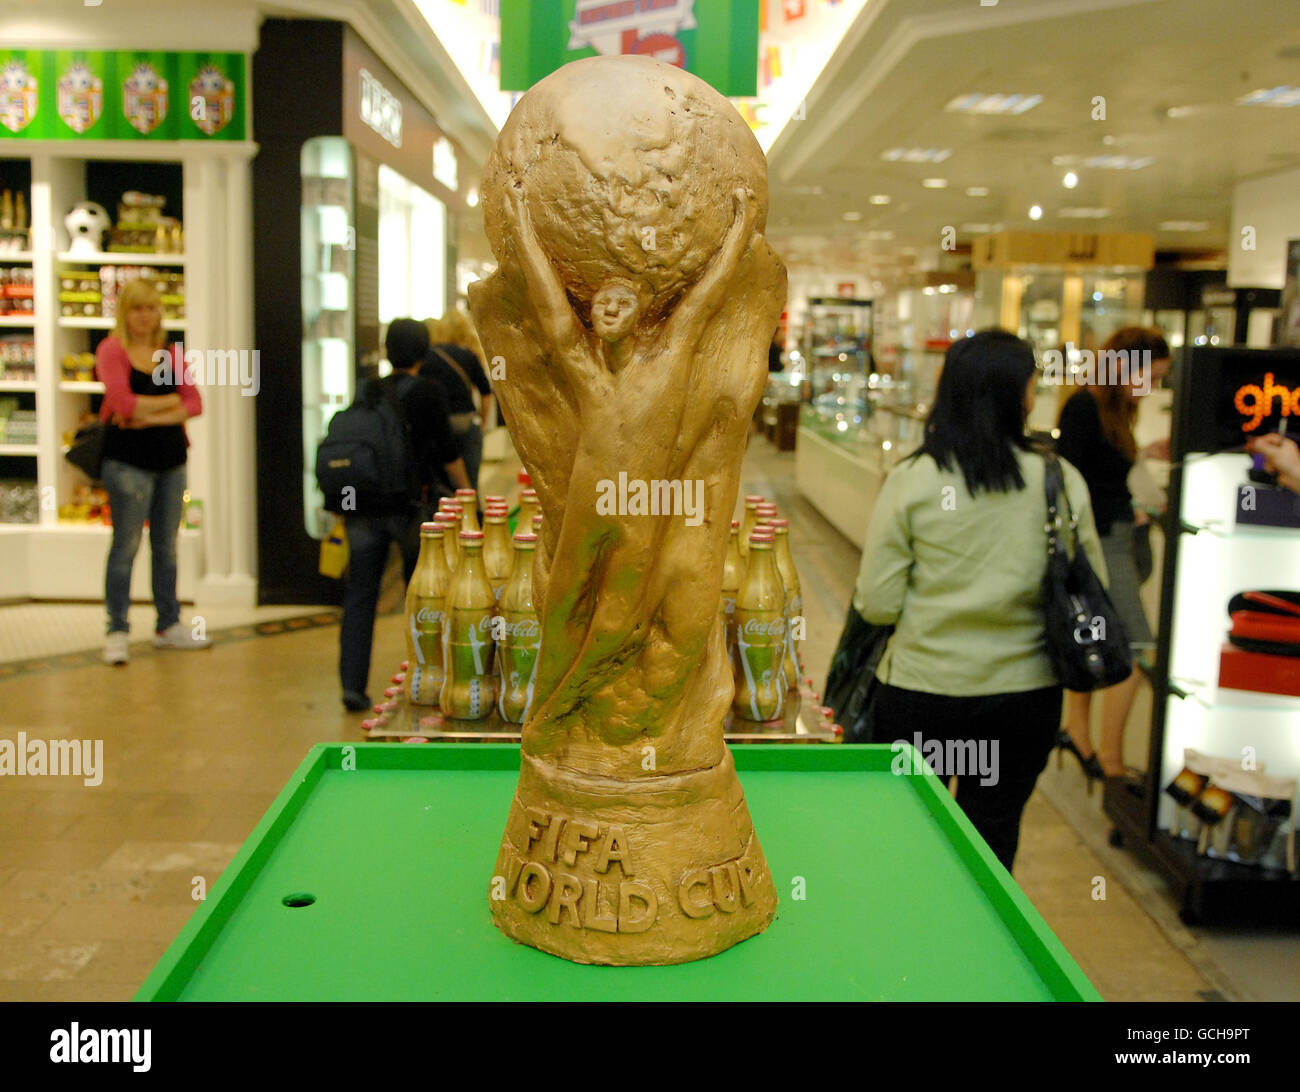 Schokolade-WM-Pokal Stockfoto, Bild: 111018960 - Alamy